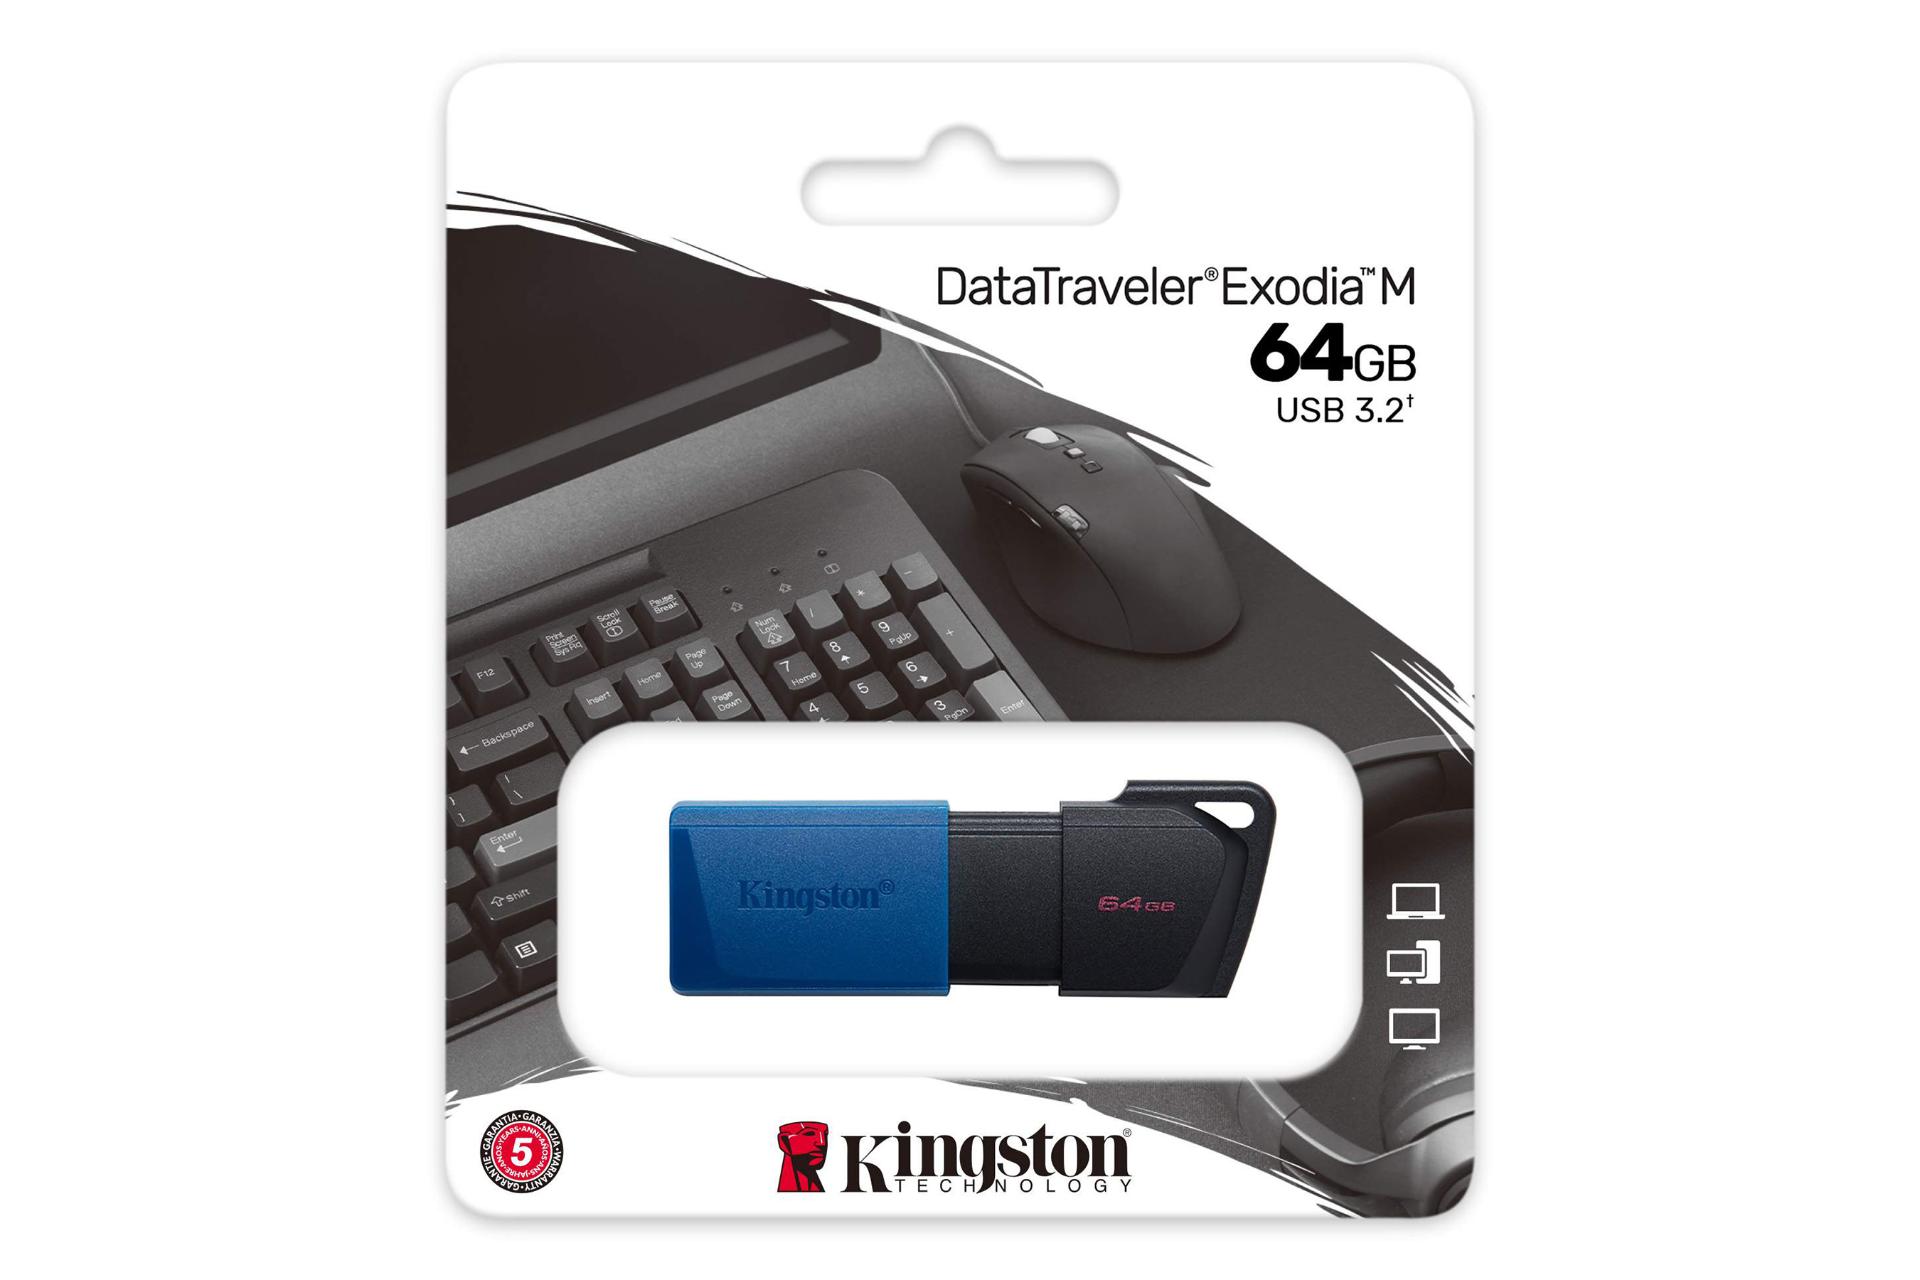 جعبه فلش مموری کینگستون Kingston DataTraveler Exodia M 64GB